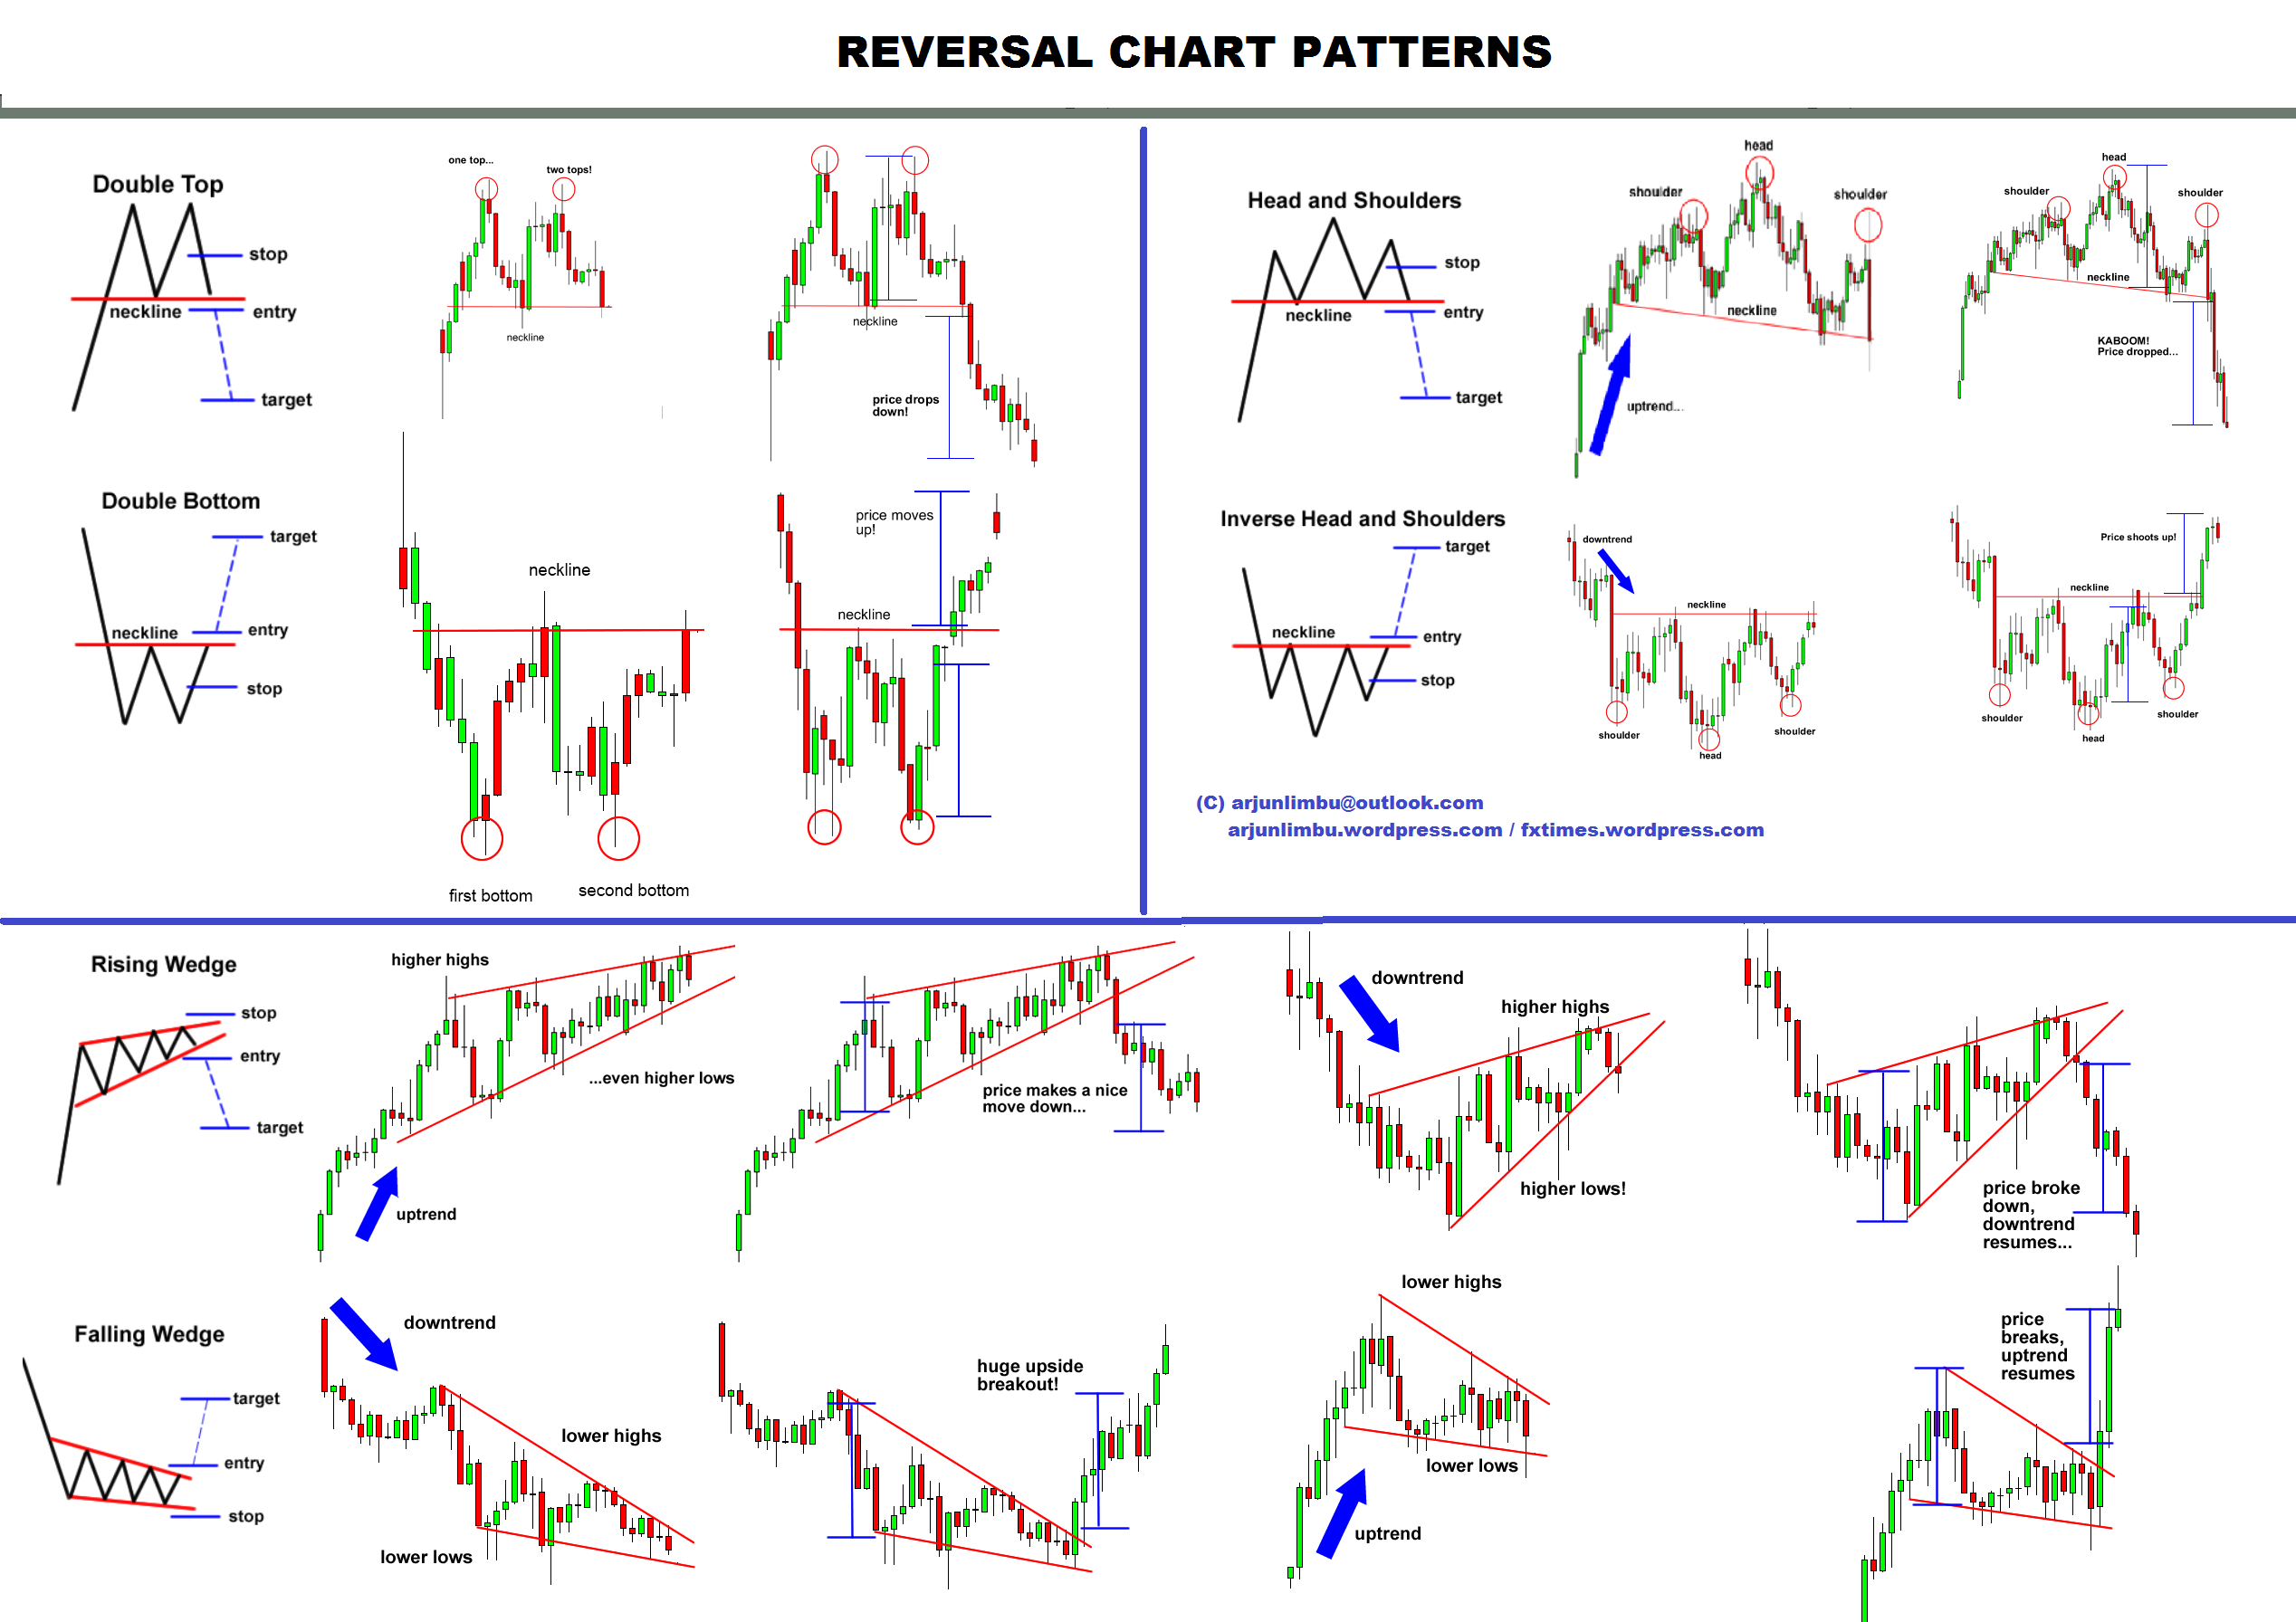 Forex chart patterns